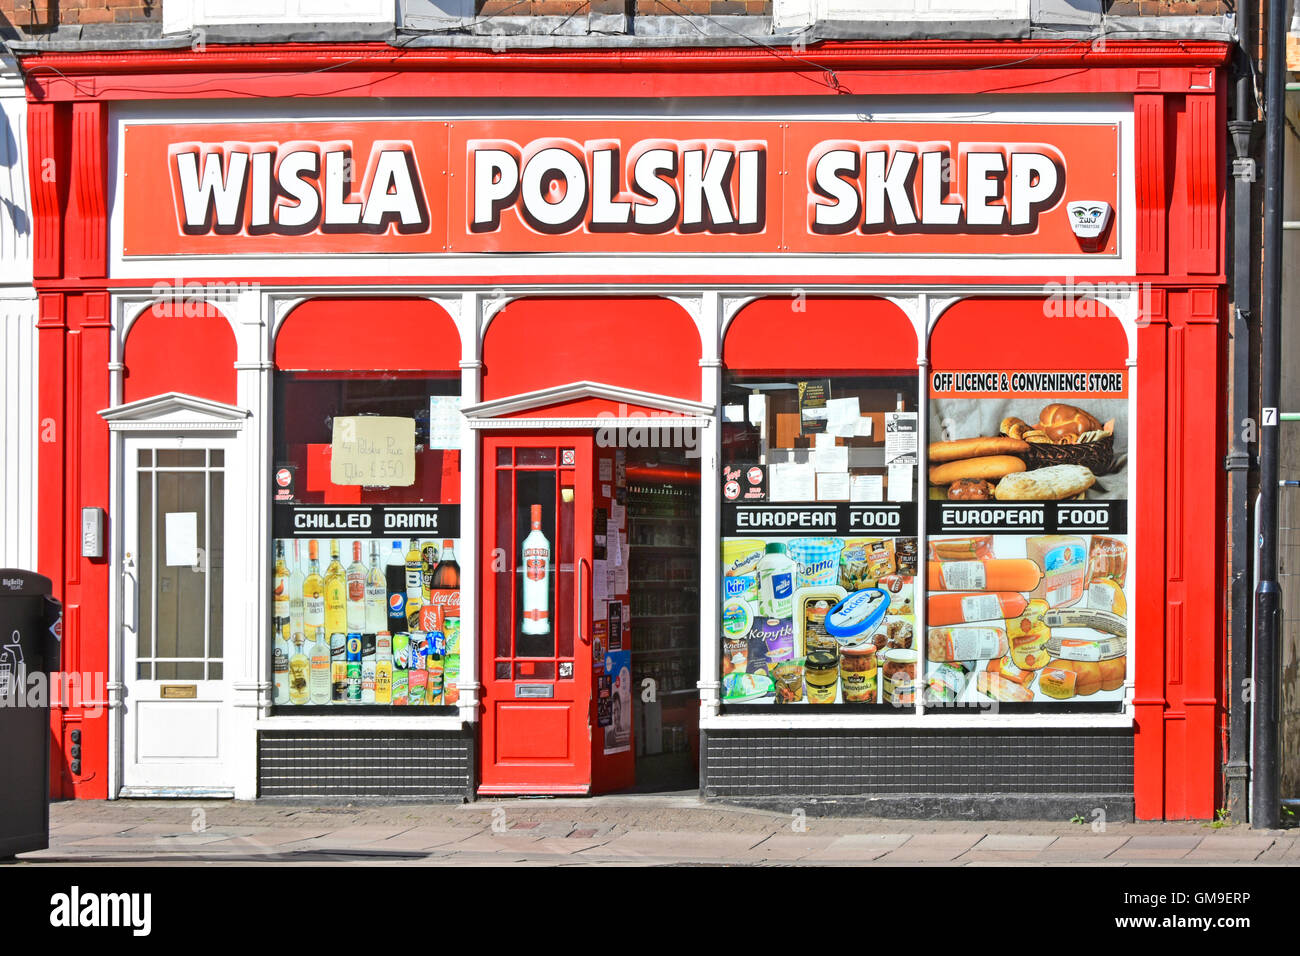 Polski Sklep polnischen Shop aus Lizenz- und Convenience-Store Ladenfront mit Fenster Poster im Stadtzentrum von Rugby Warwickshire England UK Stockfoto